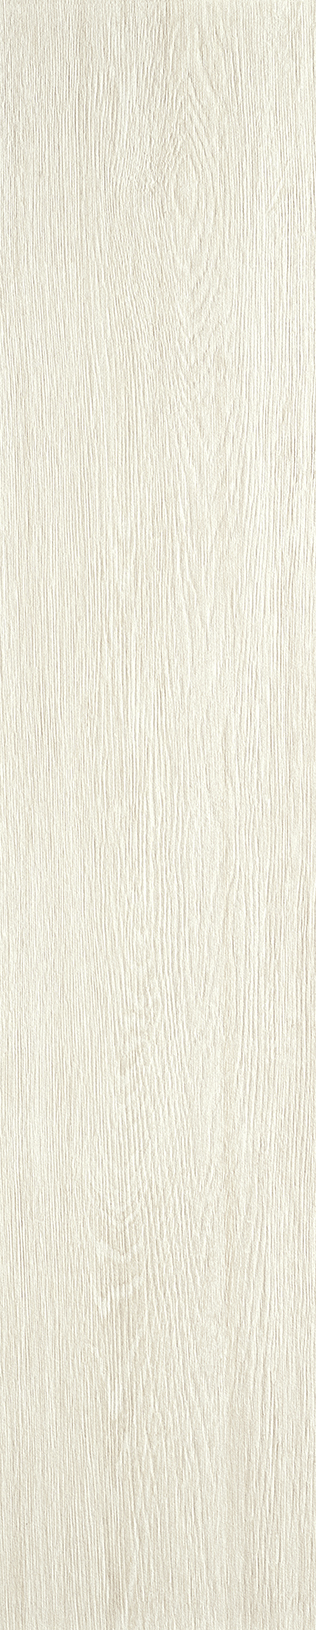 Lovetiles Timber White Antislip White B6090002001K rutschhemmend 20x100cm 8mm